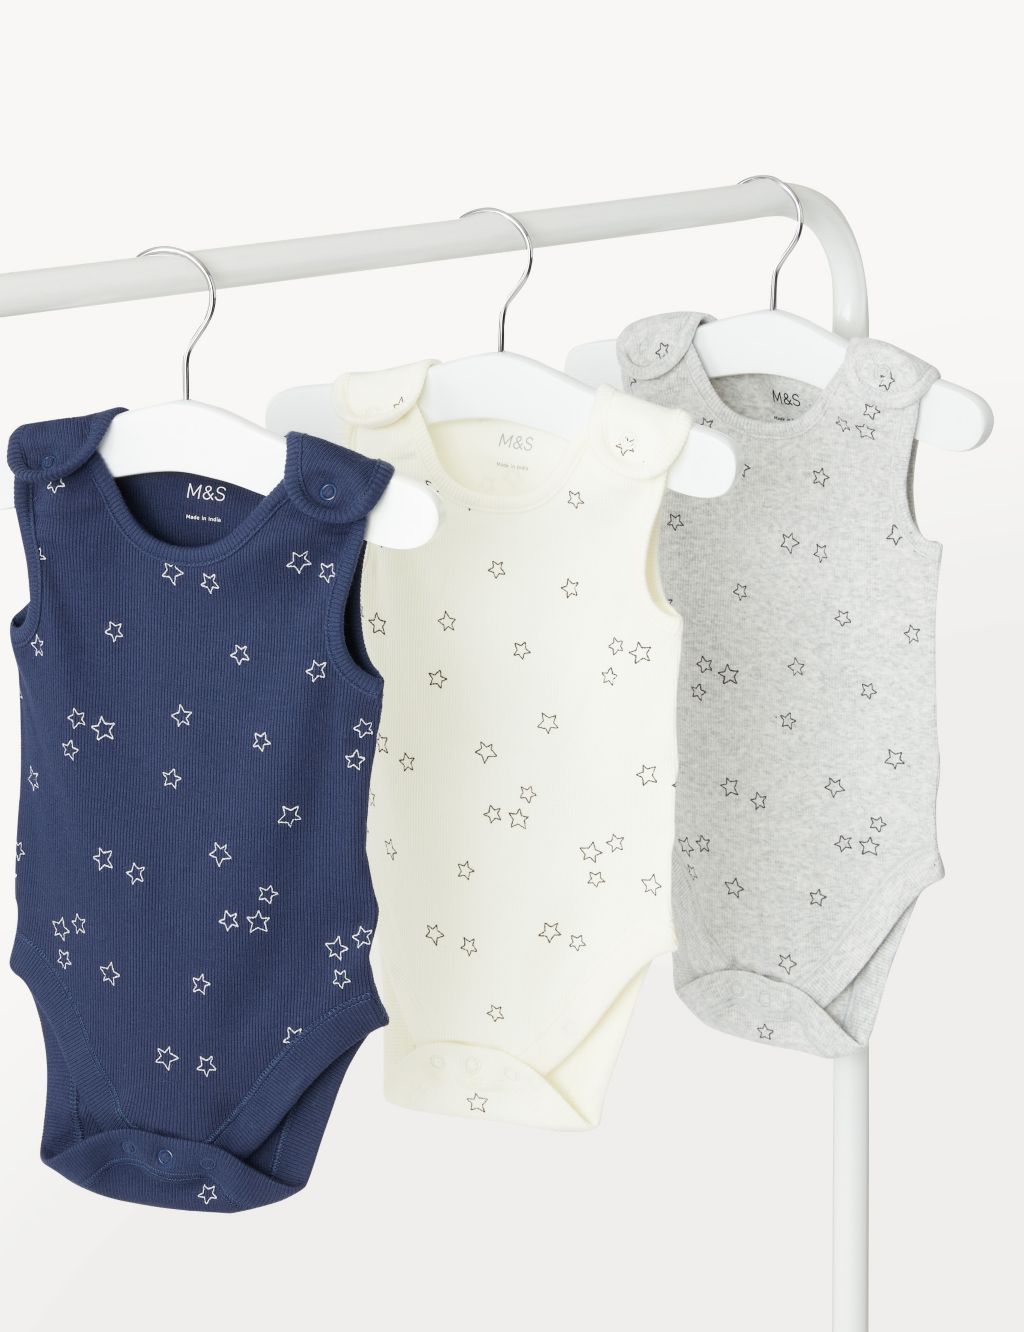 3pk Cotton Rich Star Print Bodysuits (0-3 Yrs) image 1